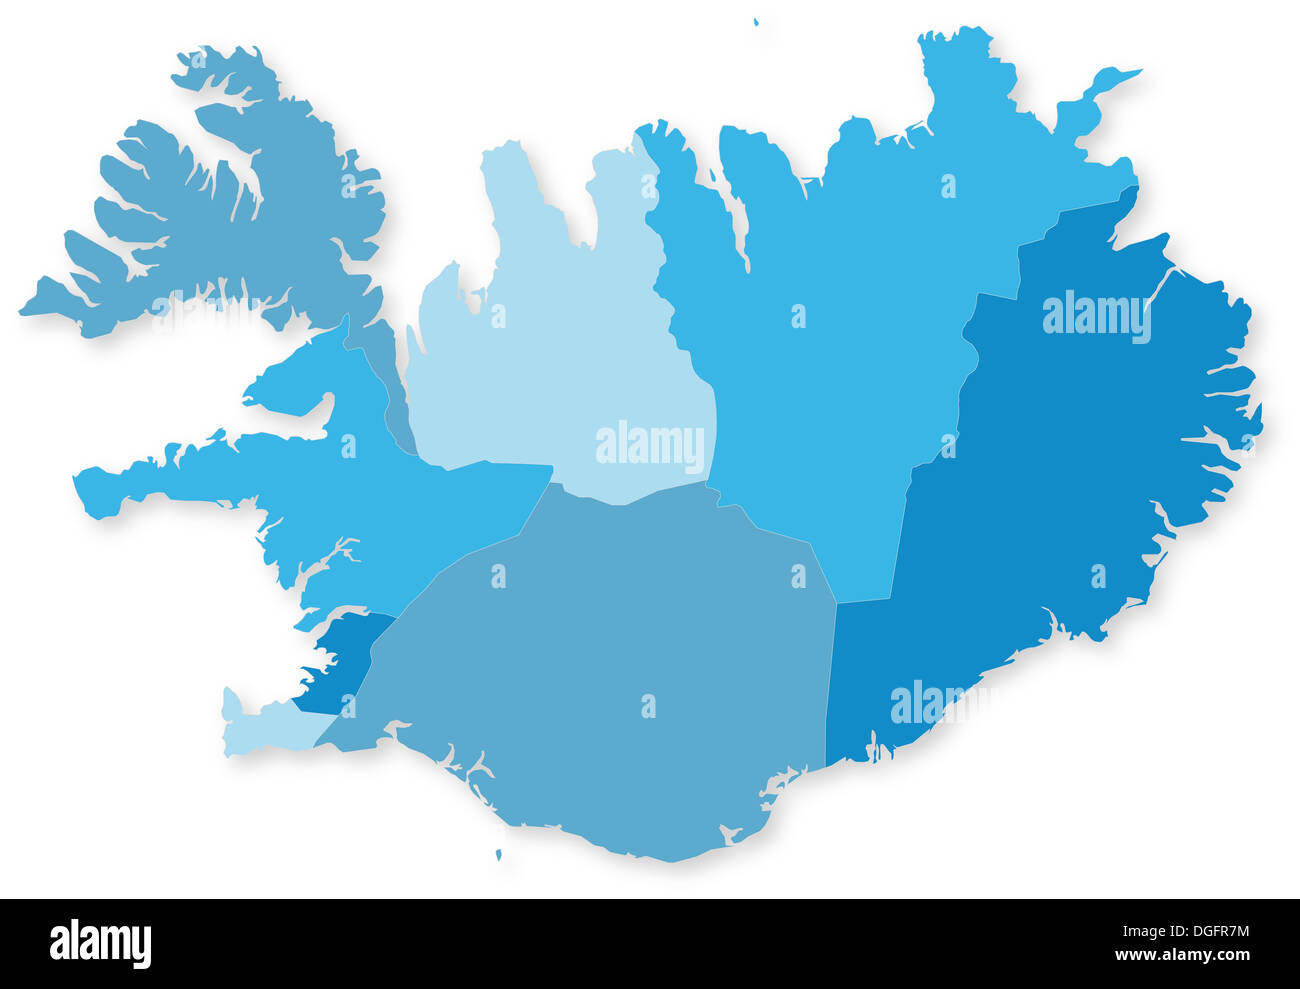 Carte Bleue De Lislande Avec Les Régions à Lombre